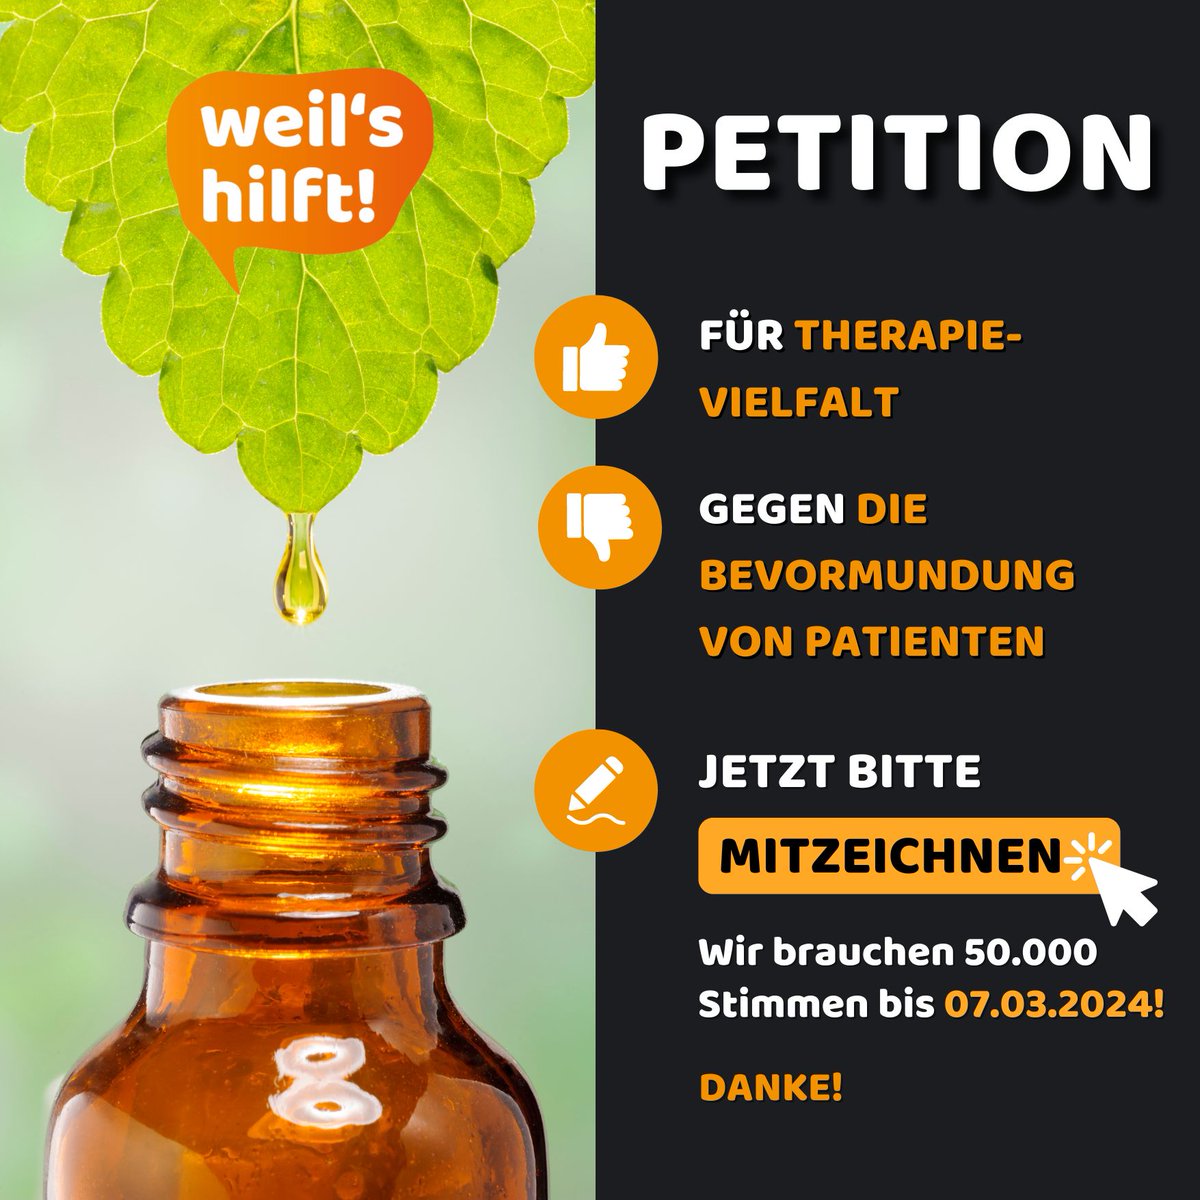 Das Ziel von mind. 50.000 online Unterschriften ist erreicht, das Anhörungsrecht im #Bundestag ist gesichert. Die Petition pro Homöopathie geht aber auch auf Listen bis zum 7.3. weiter! @Karl_Lauterbach @BMG_Bund @spdbt @GrueneBundestag @fdpbt @cducsubt